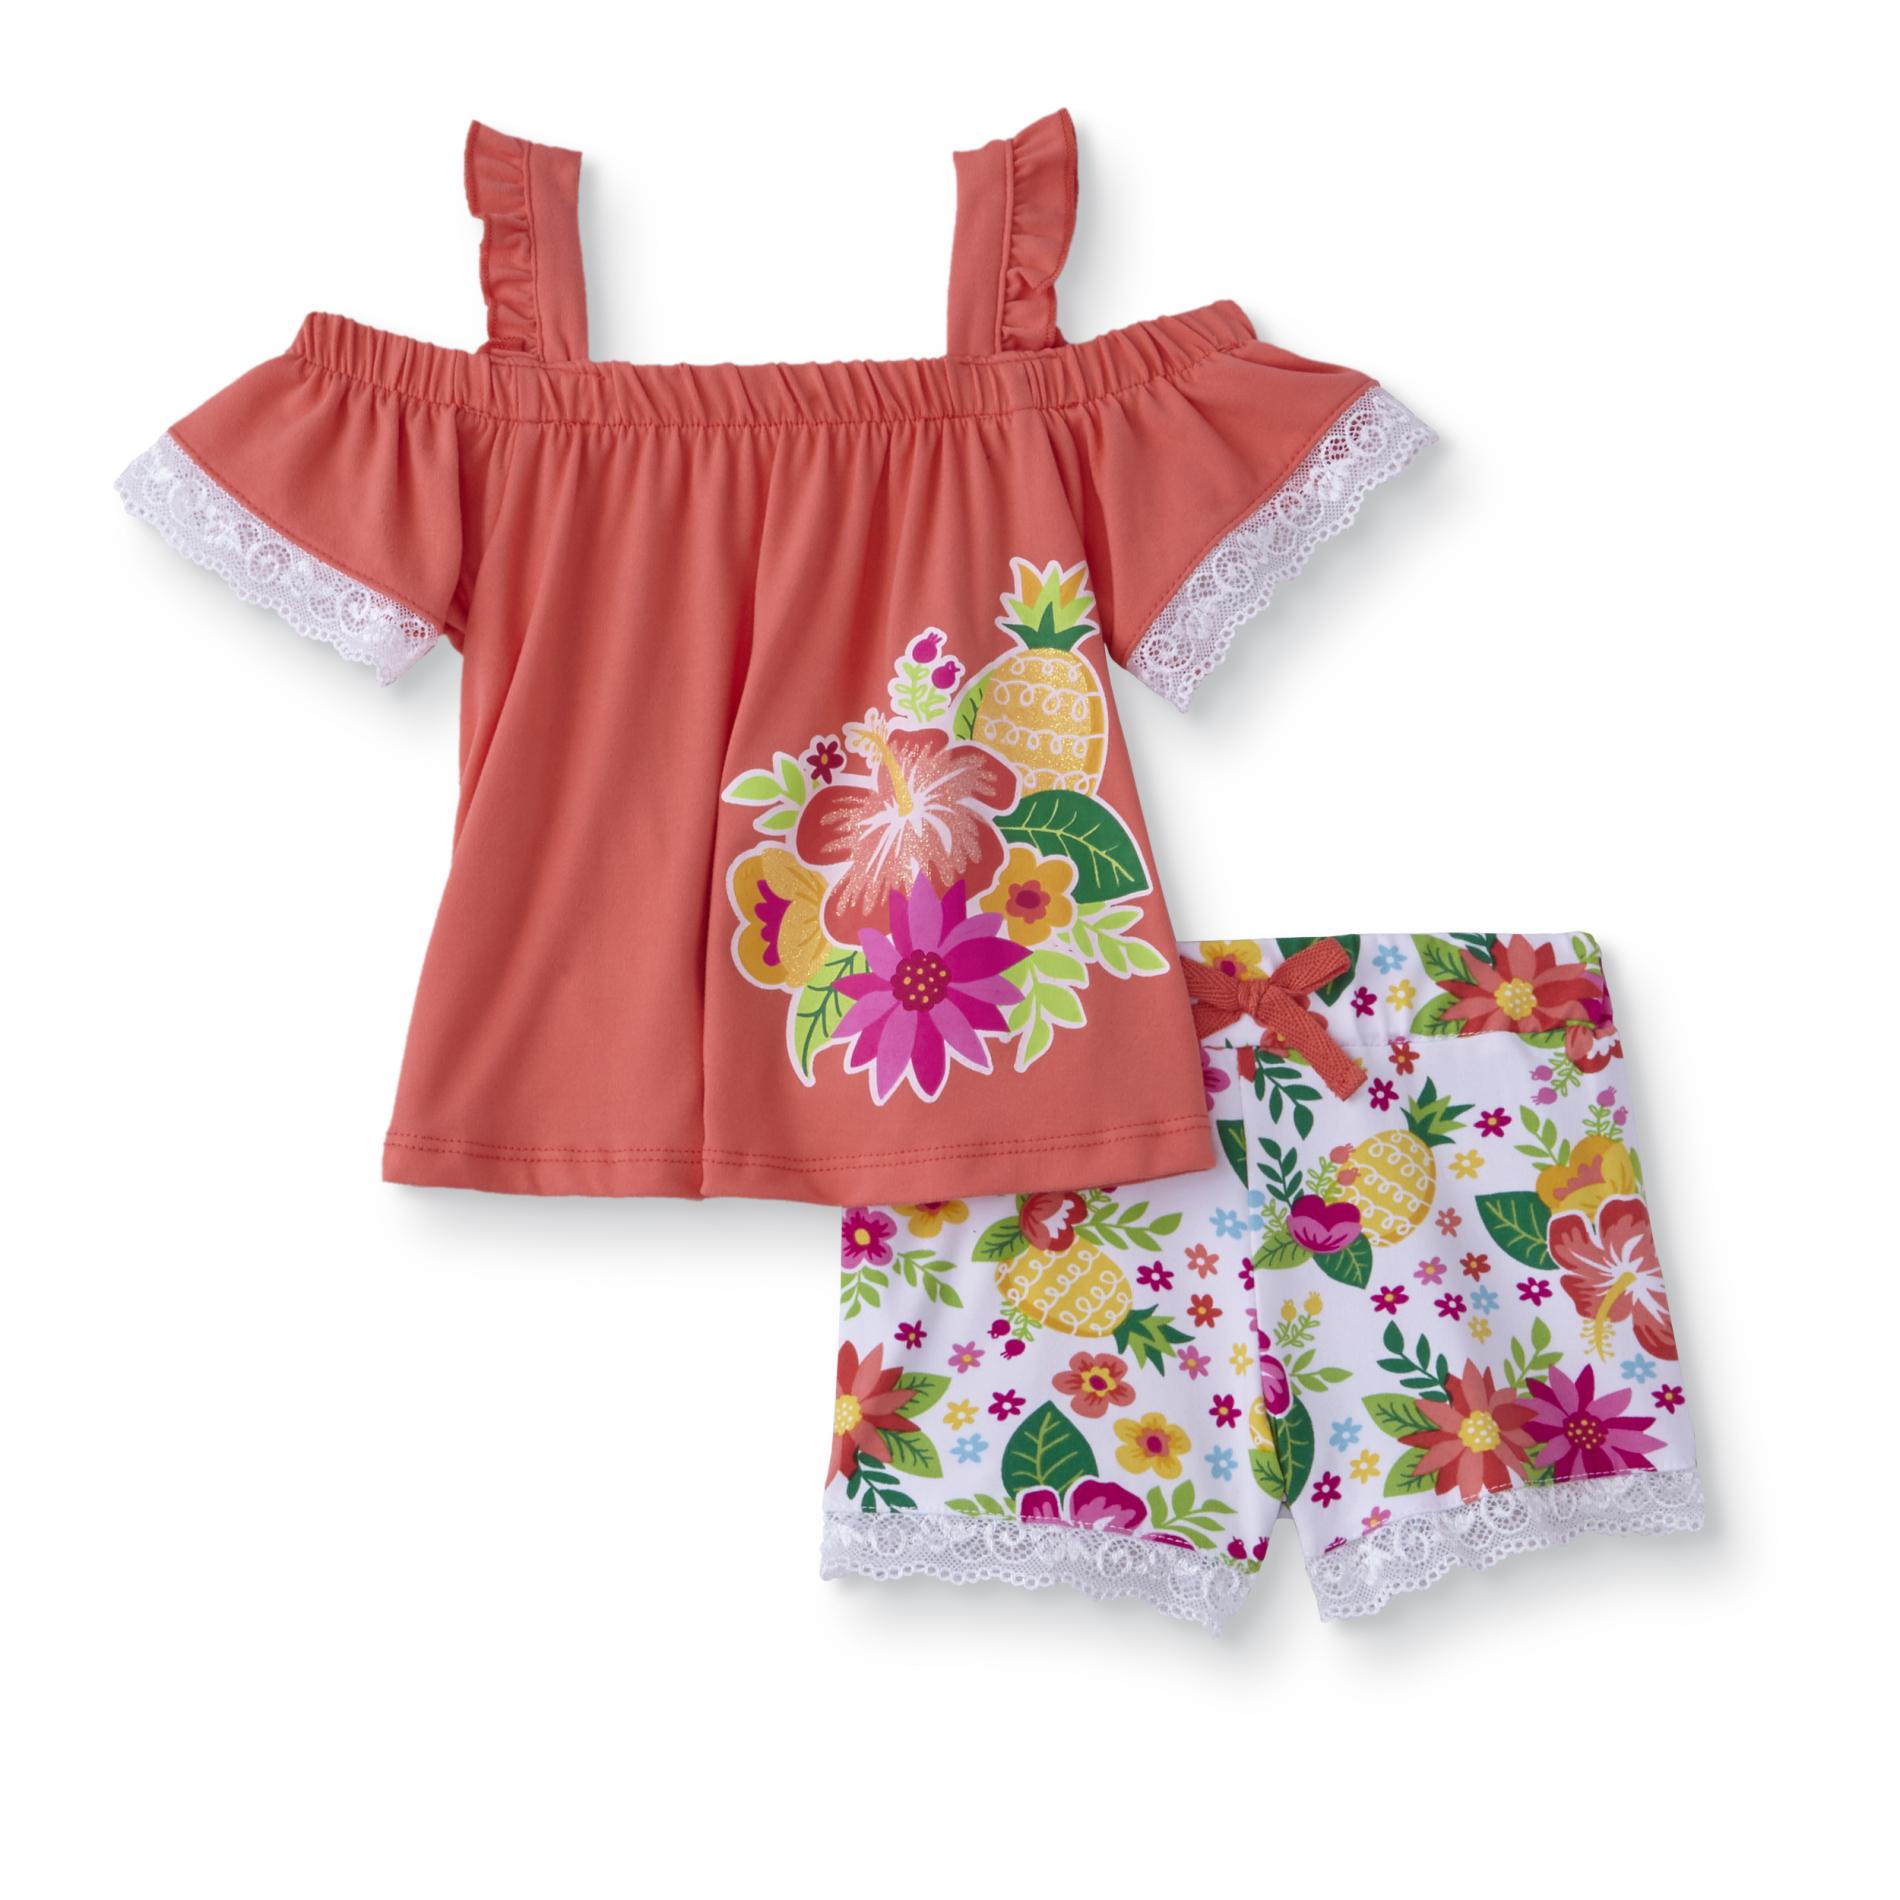 Infant Girls' Cold Shoulder Top & Shorts - Floral